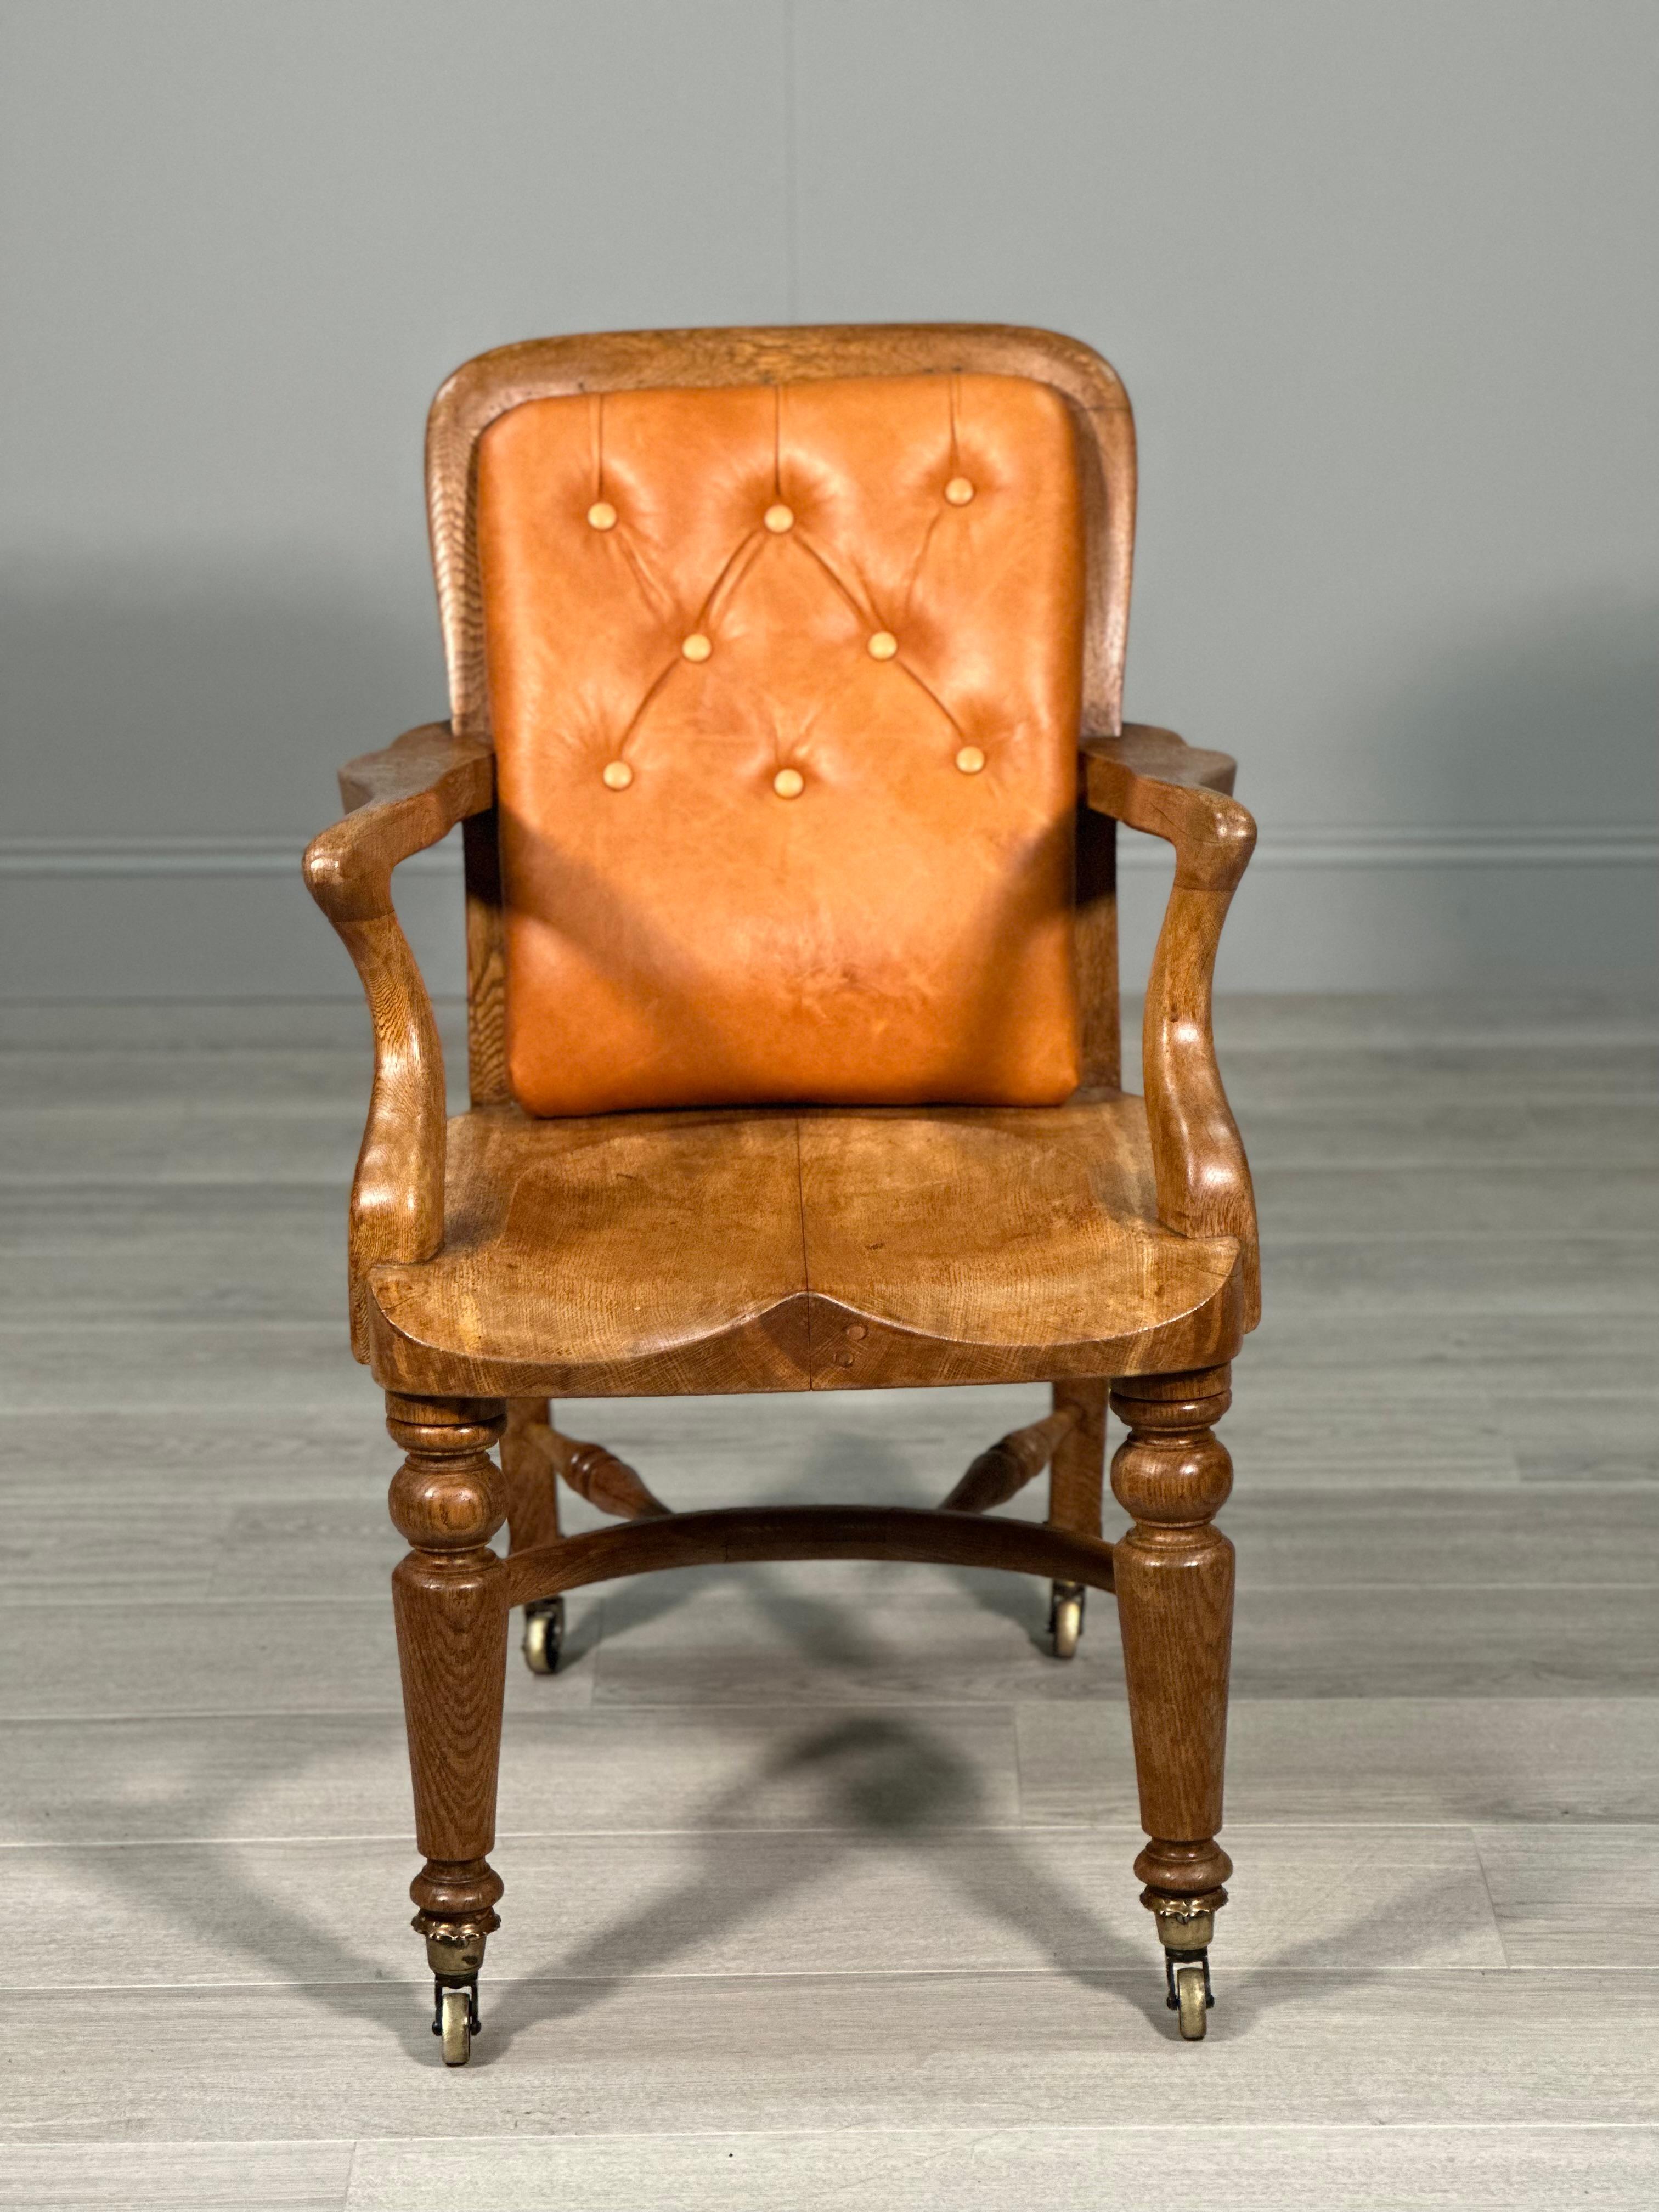 Ein hochwertiger antiker Schreibtischstuhl aus dem späten 19. Jahrhundert. Der Stuhl hat Qualität in jedem Detail, vom Schnitt der verwendeten Eiche, den Messingrollen, dem geformten, gesattelten Sitz und der neu gepolsterten Lederlehne. Der Stuhl